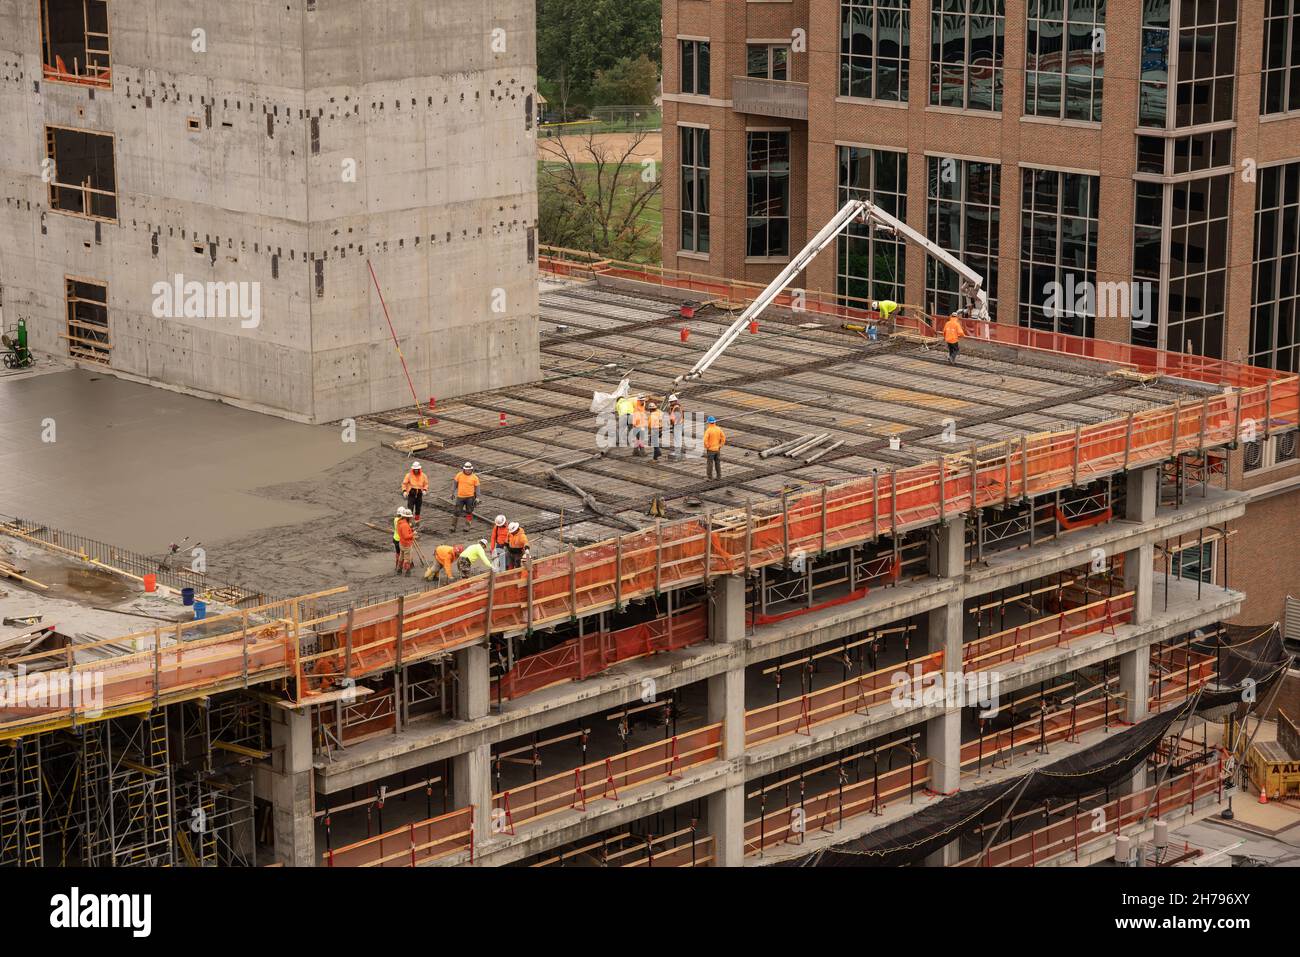 Une équipe de construction verse du béton sur un chantier de quartier d'affaires.Le bâtiment est en construction à Clayton, dans la banlieue de Saint-Louis, Missouri, aux États-Unis. Banque D'Images